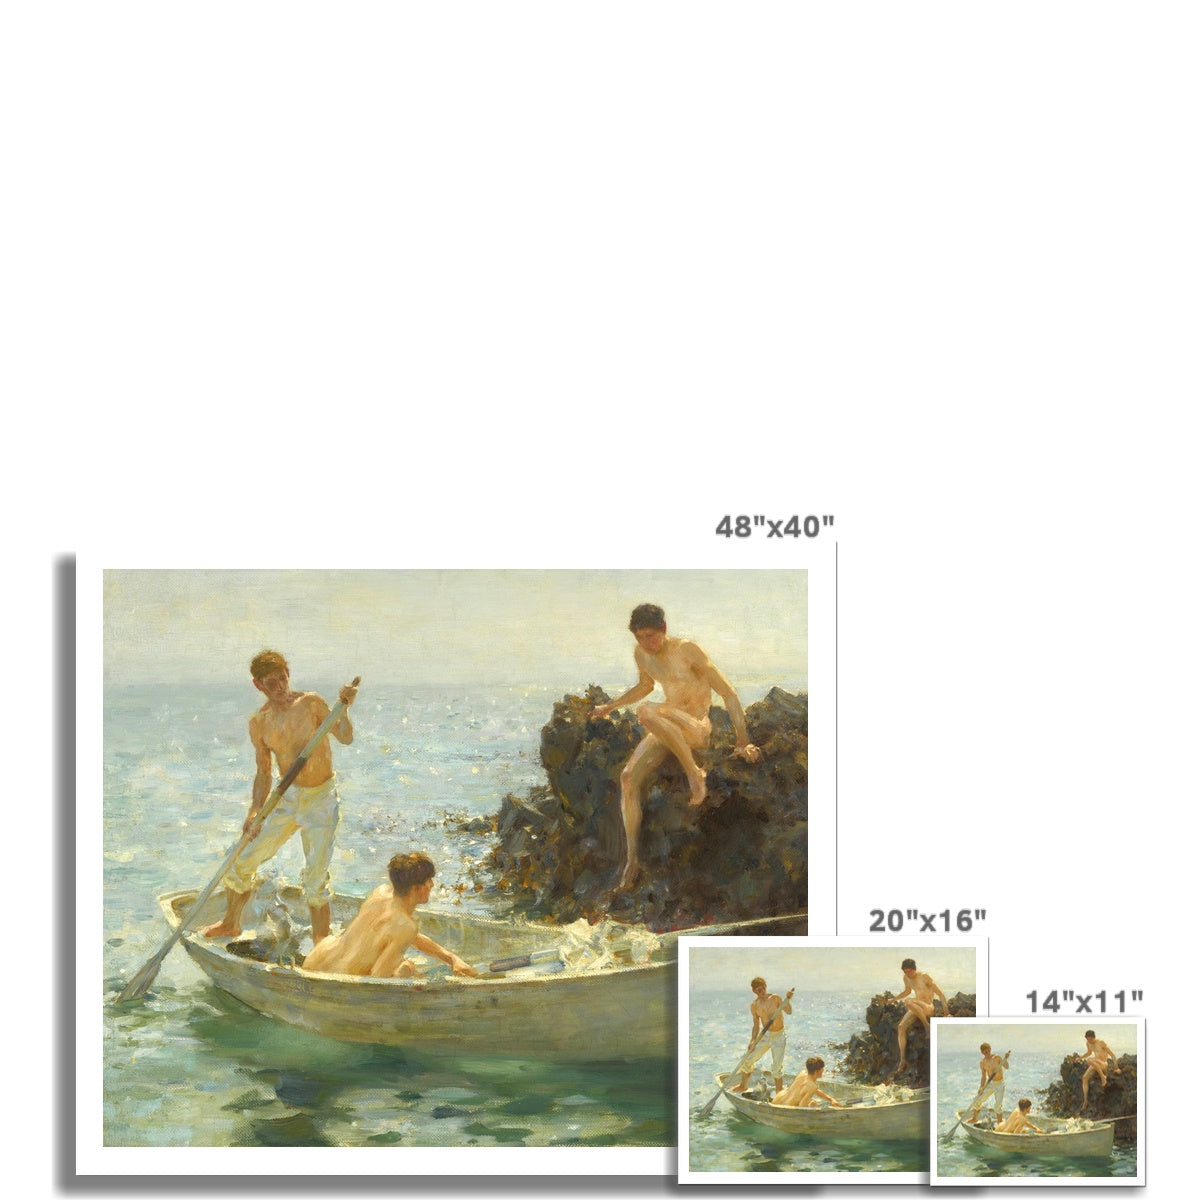 Henry Scott Tuke Open Edition Art Print. The Bathing Cove. Art Gallery Historic Art